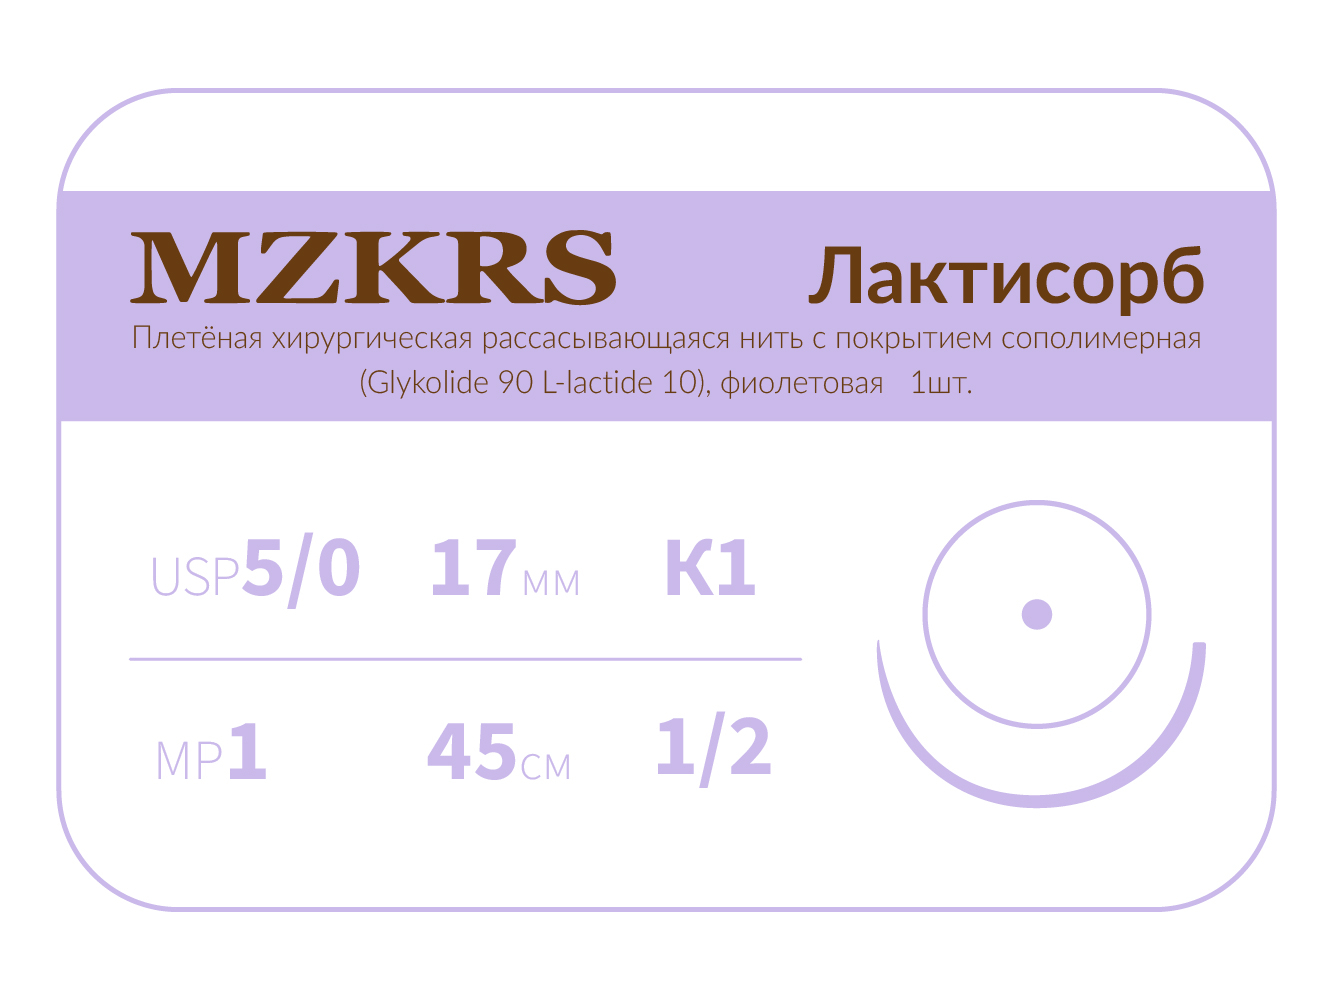 1712К1-Premium-5/0 (1)45 ПГЛ ЛАКТИСОРБ хирургическая нить сополимерная, MZKRS (Россия)